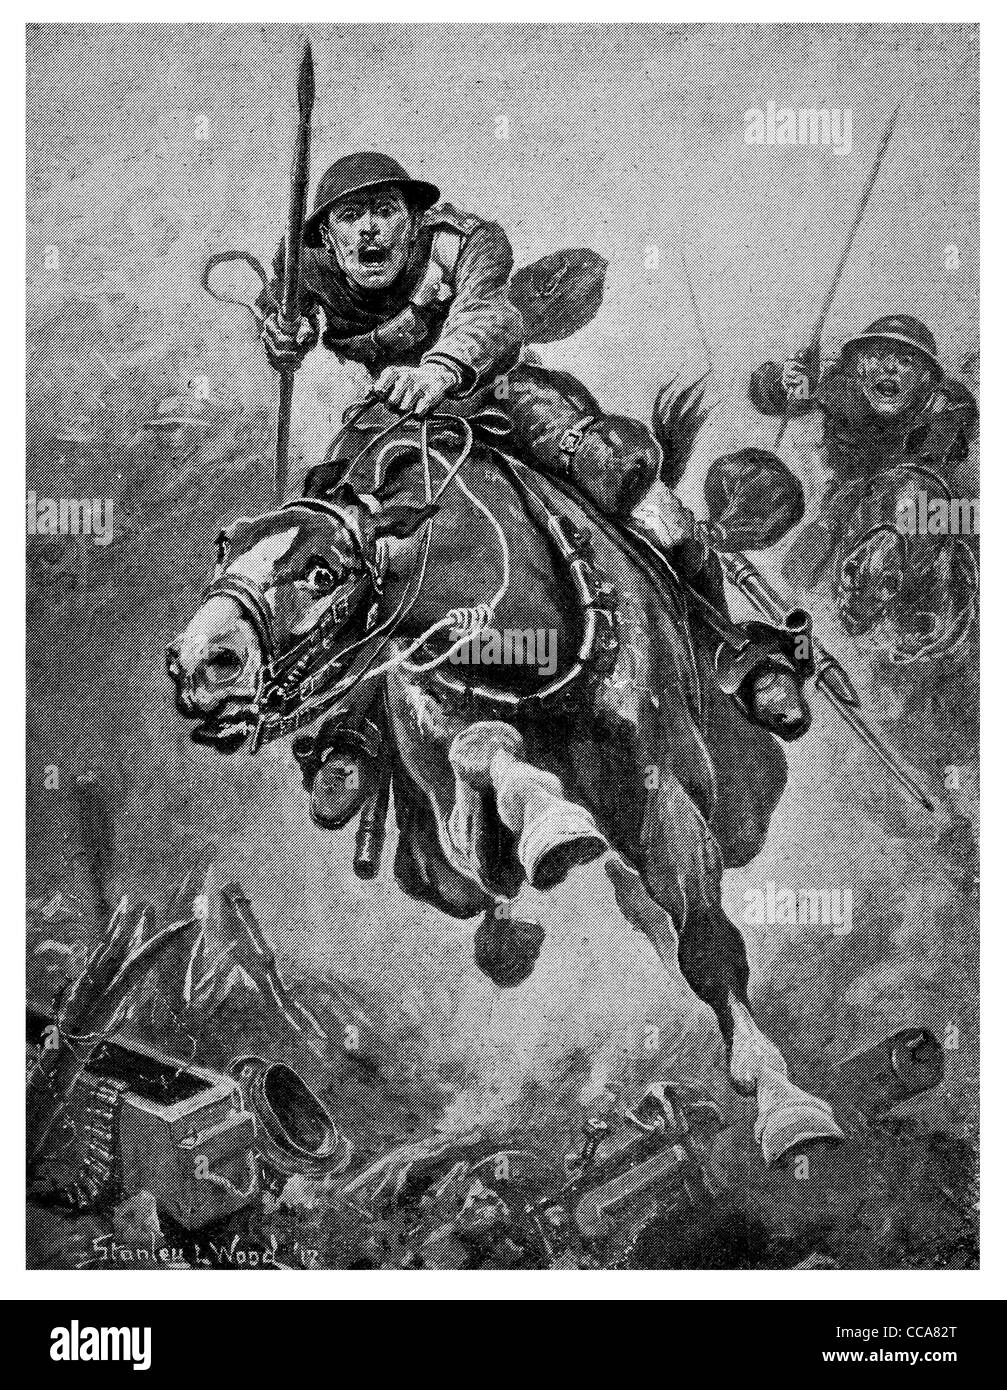 Charge de cavalerie britannique 1917 front de l'ouest lance le galop des chevaux de charge la bravoure brave la colère la peur de bataille non man's land tranchée Banque D'Images